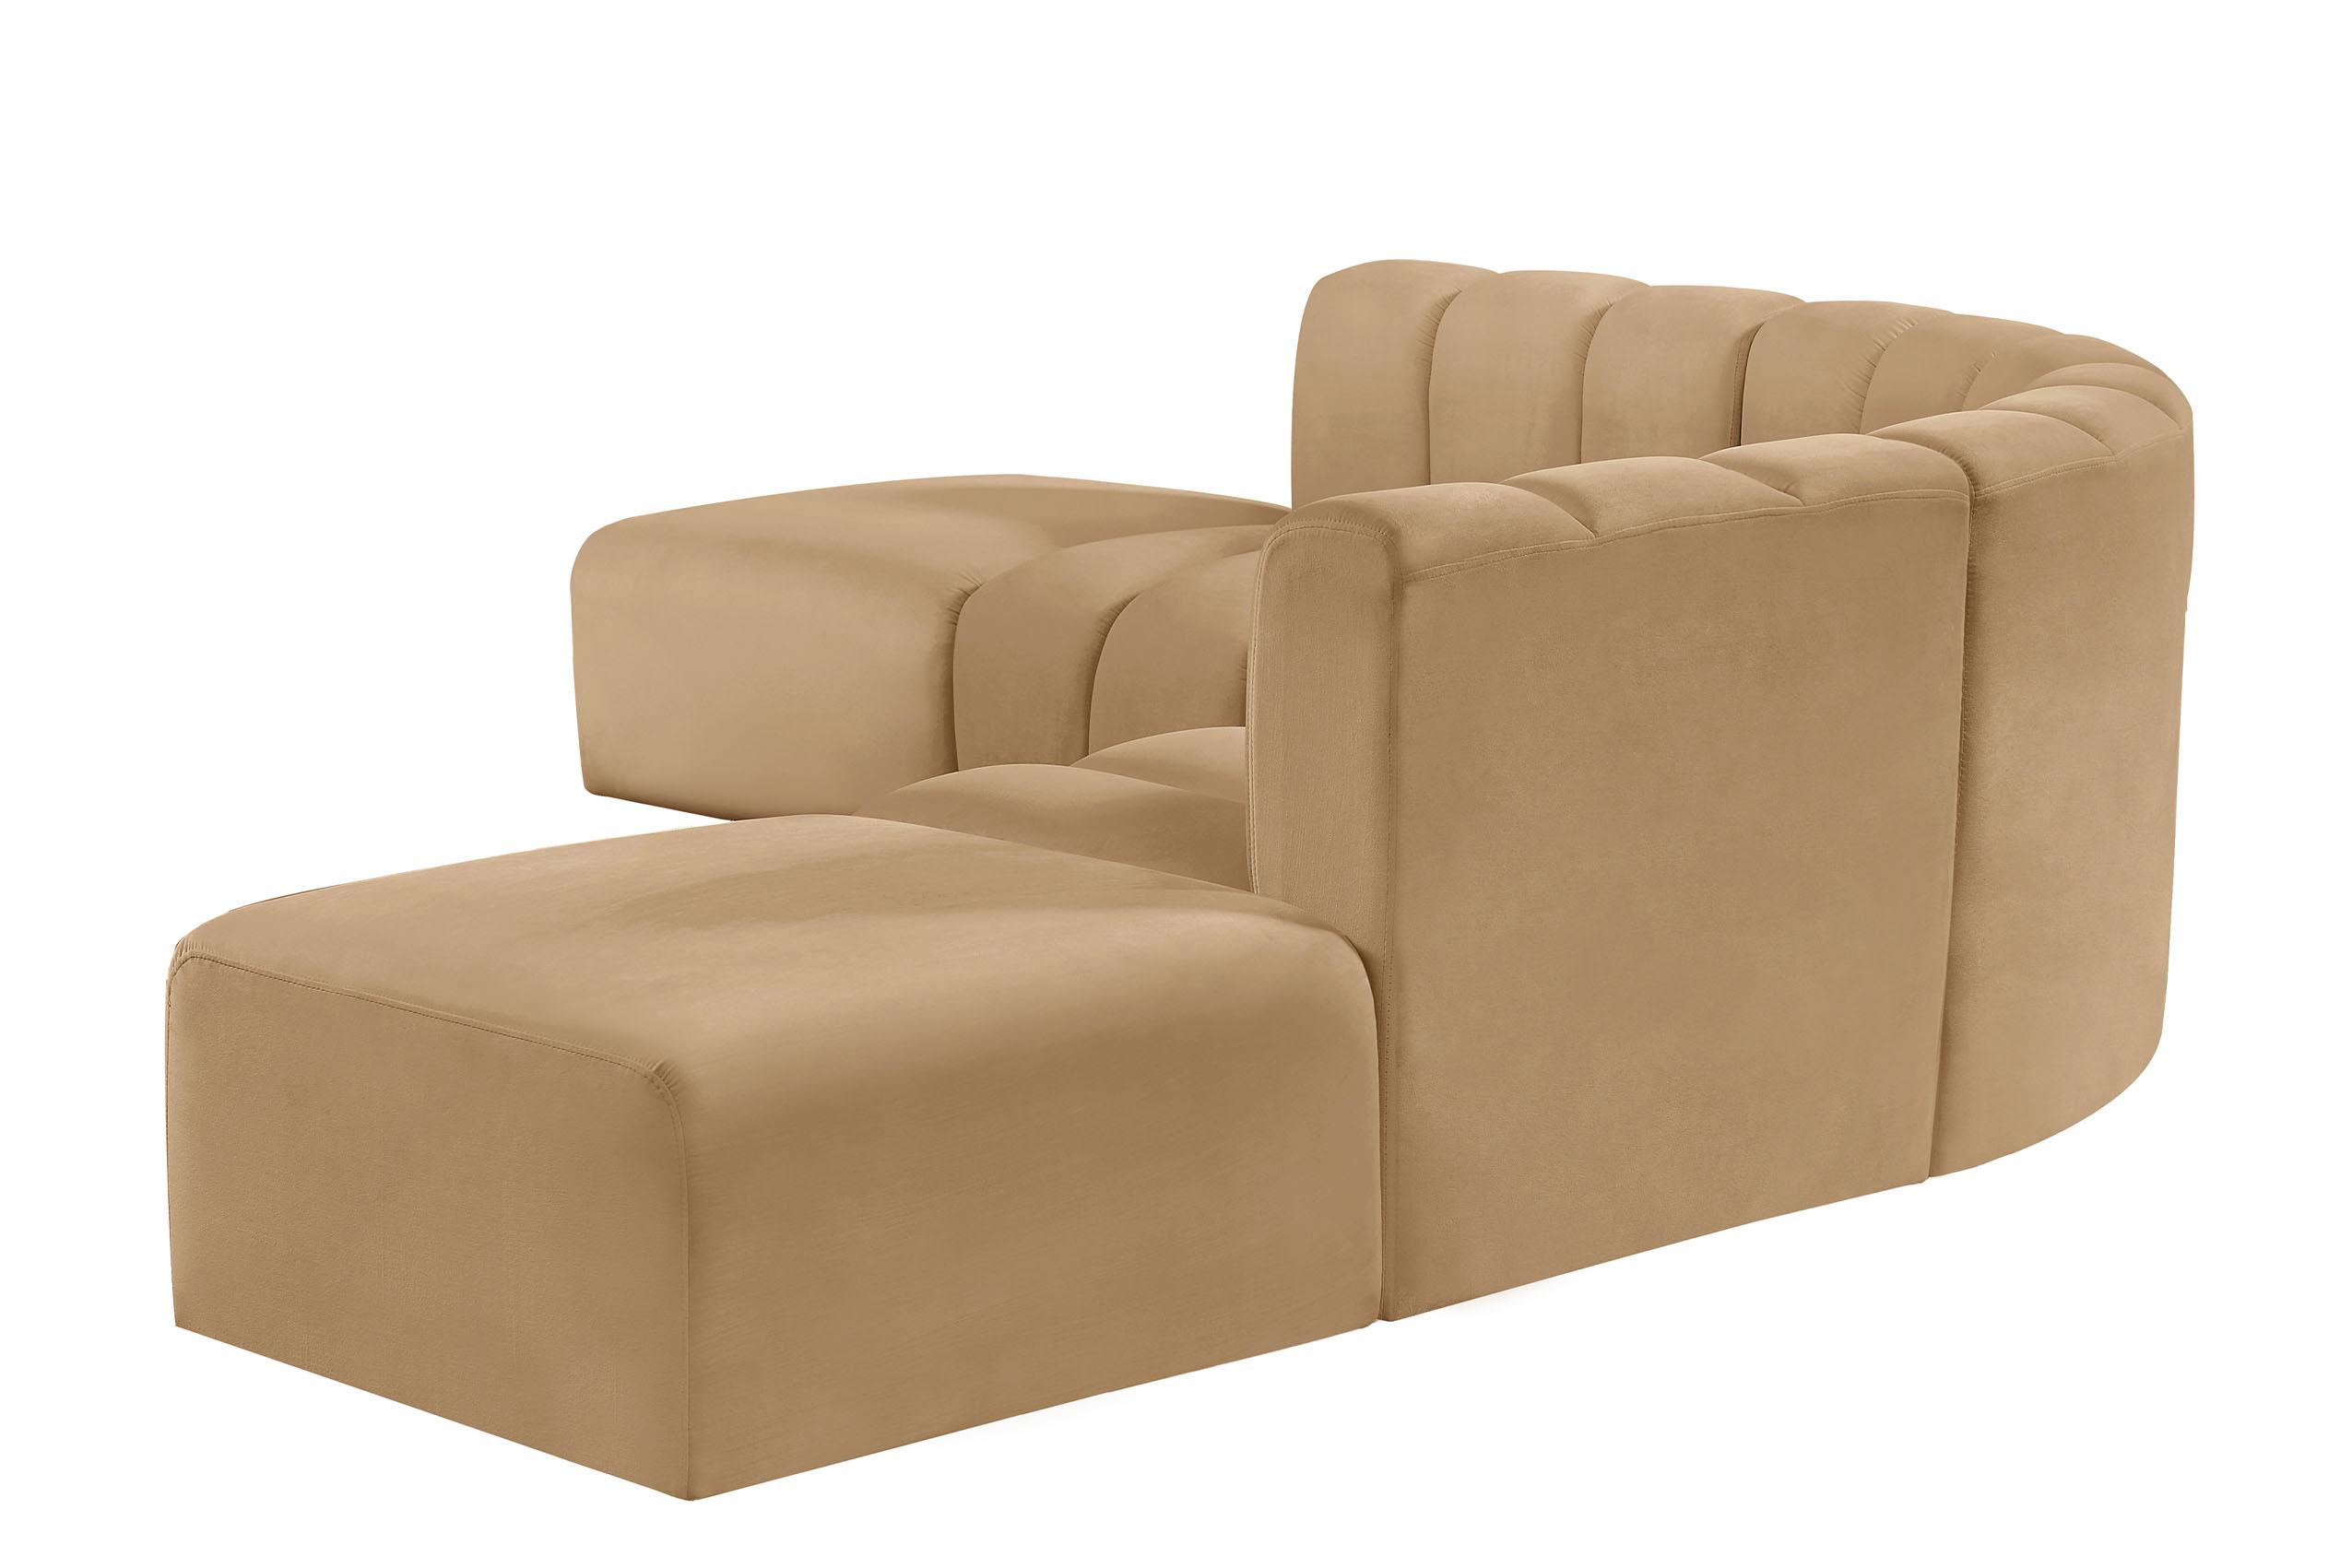 

    
103Camel-S6C Meridian Furniture Modular Sectional Sofa
